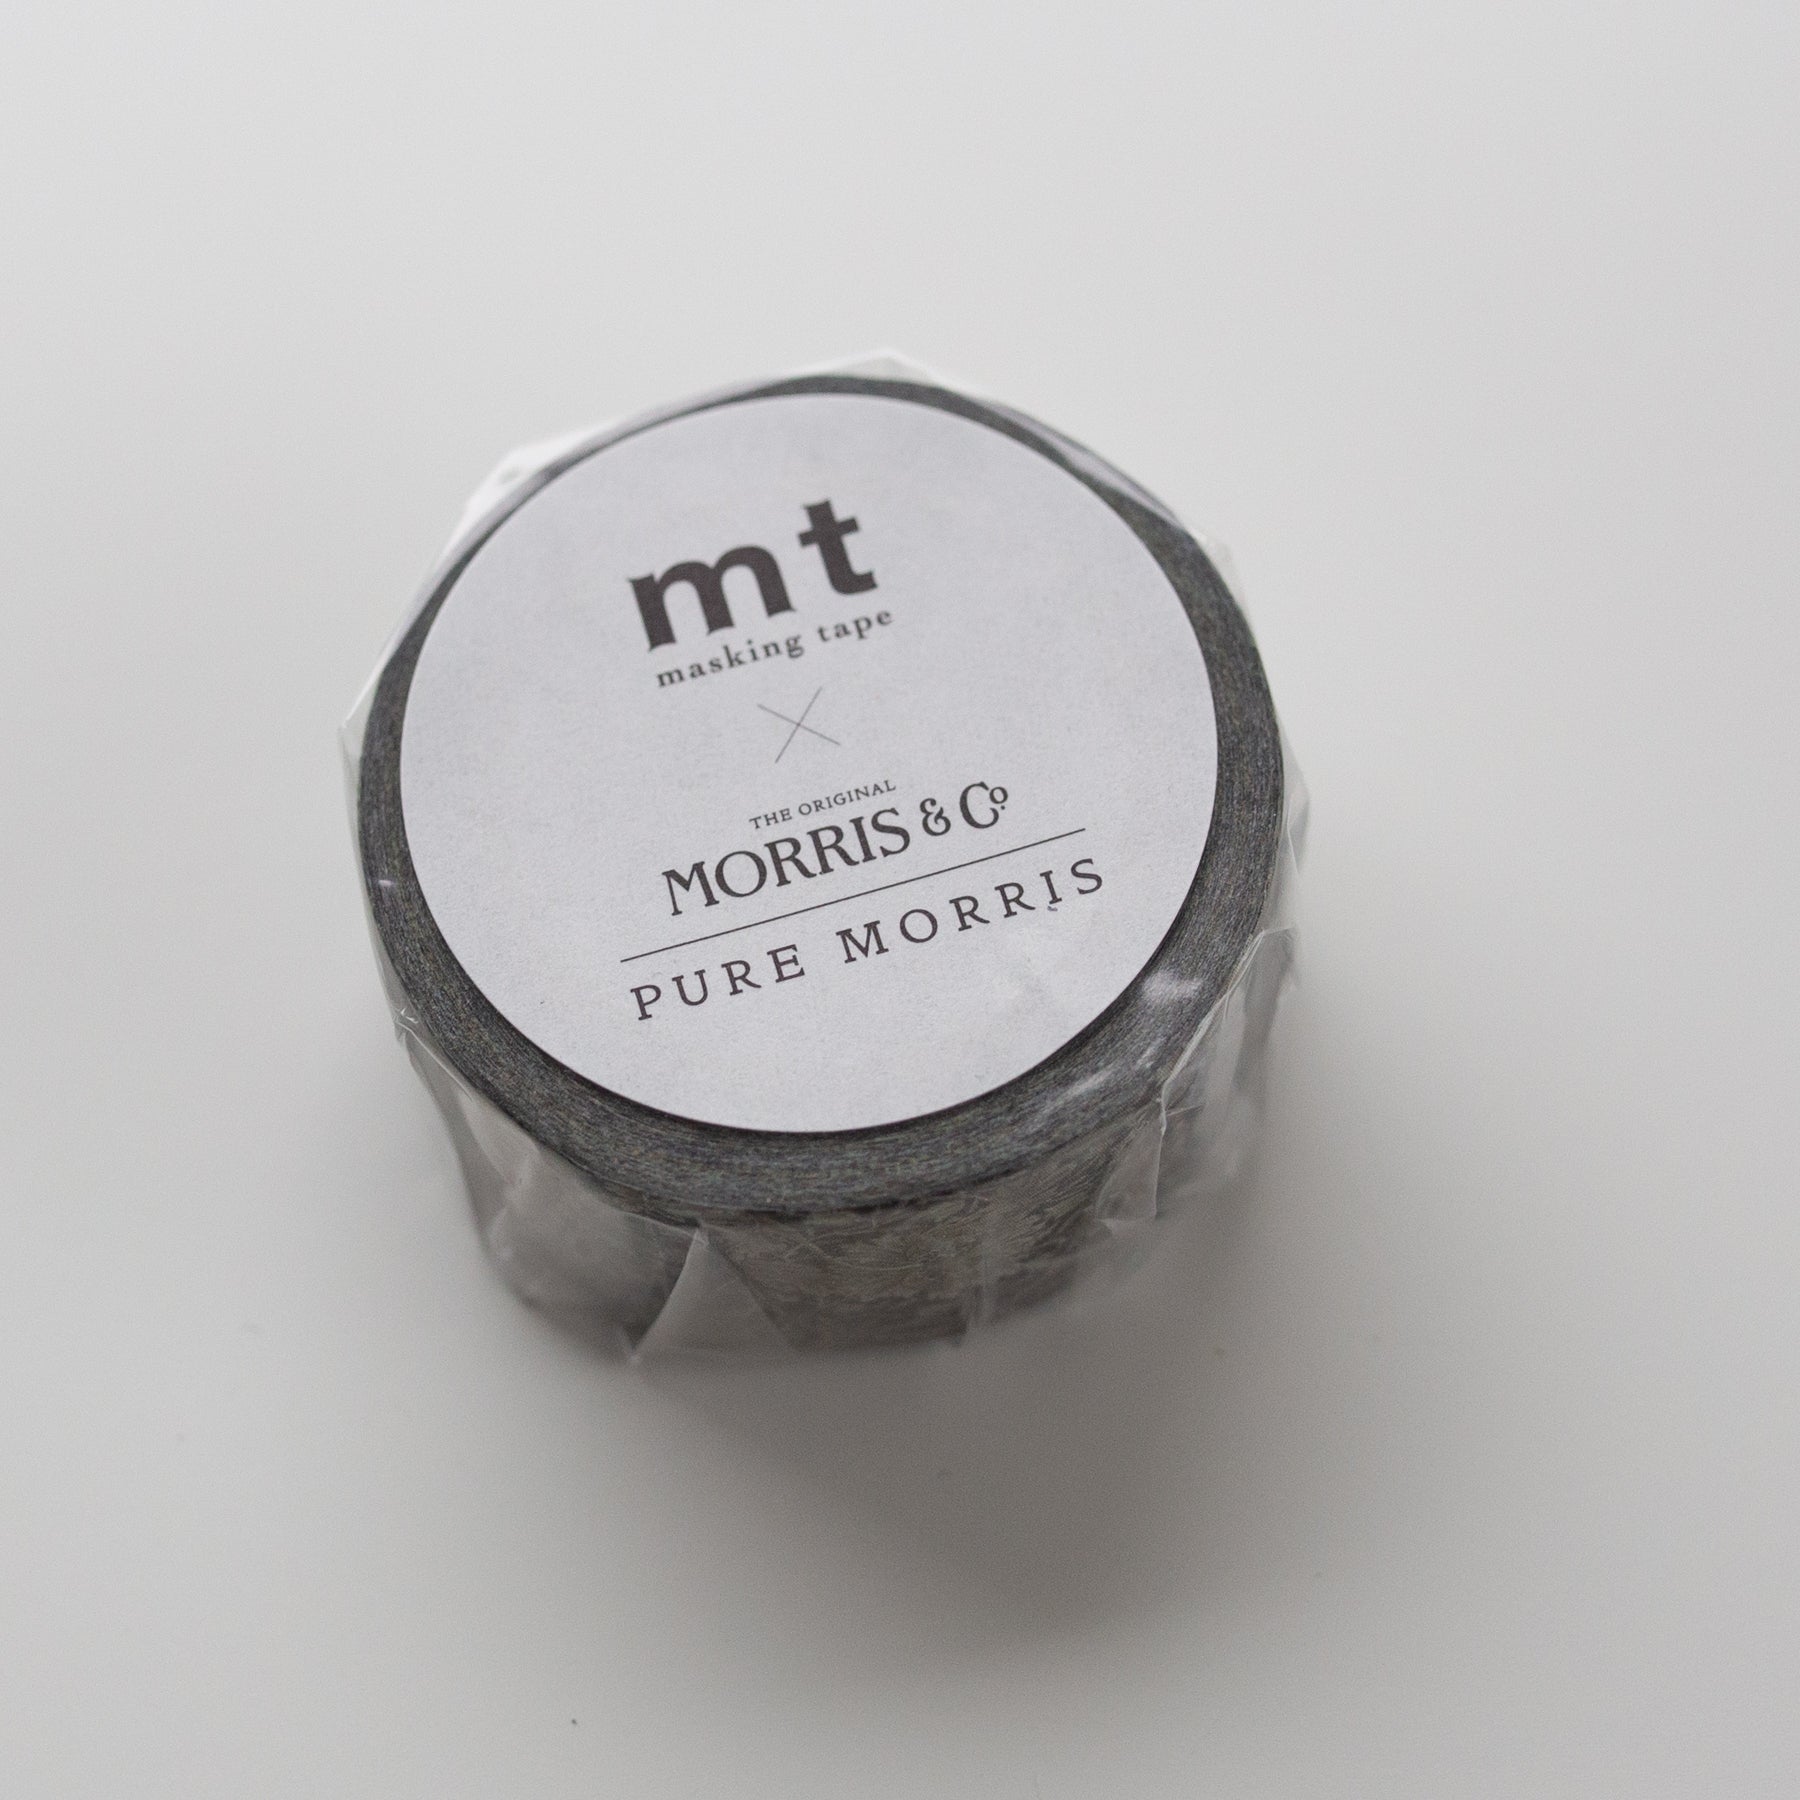 MT Masking Tape Morris & Co. Pure Morris